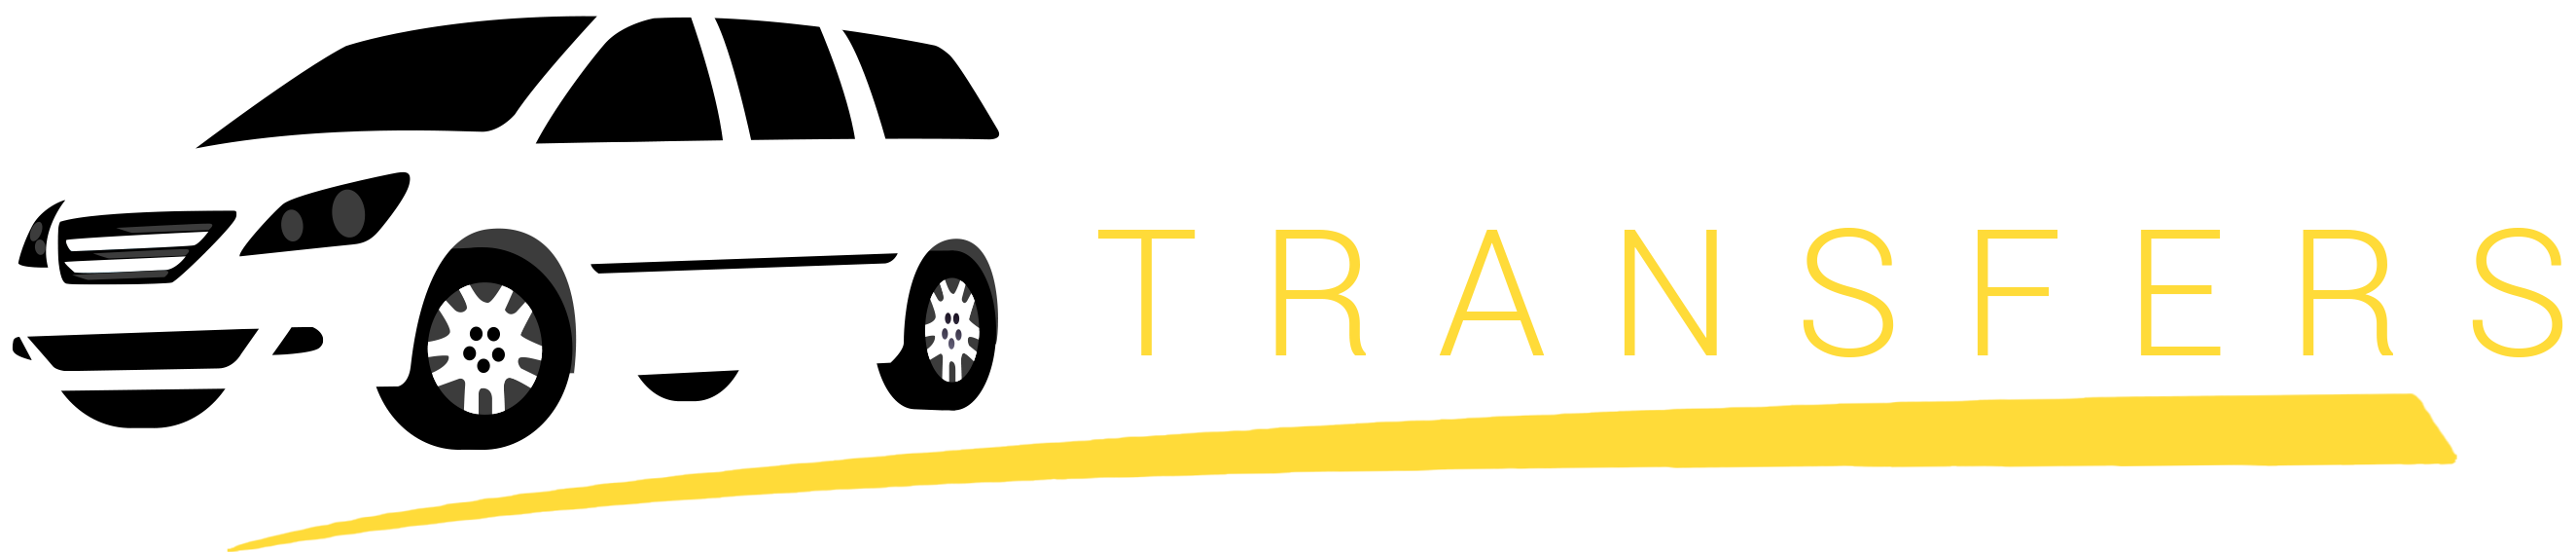 alextransfersWideStr21